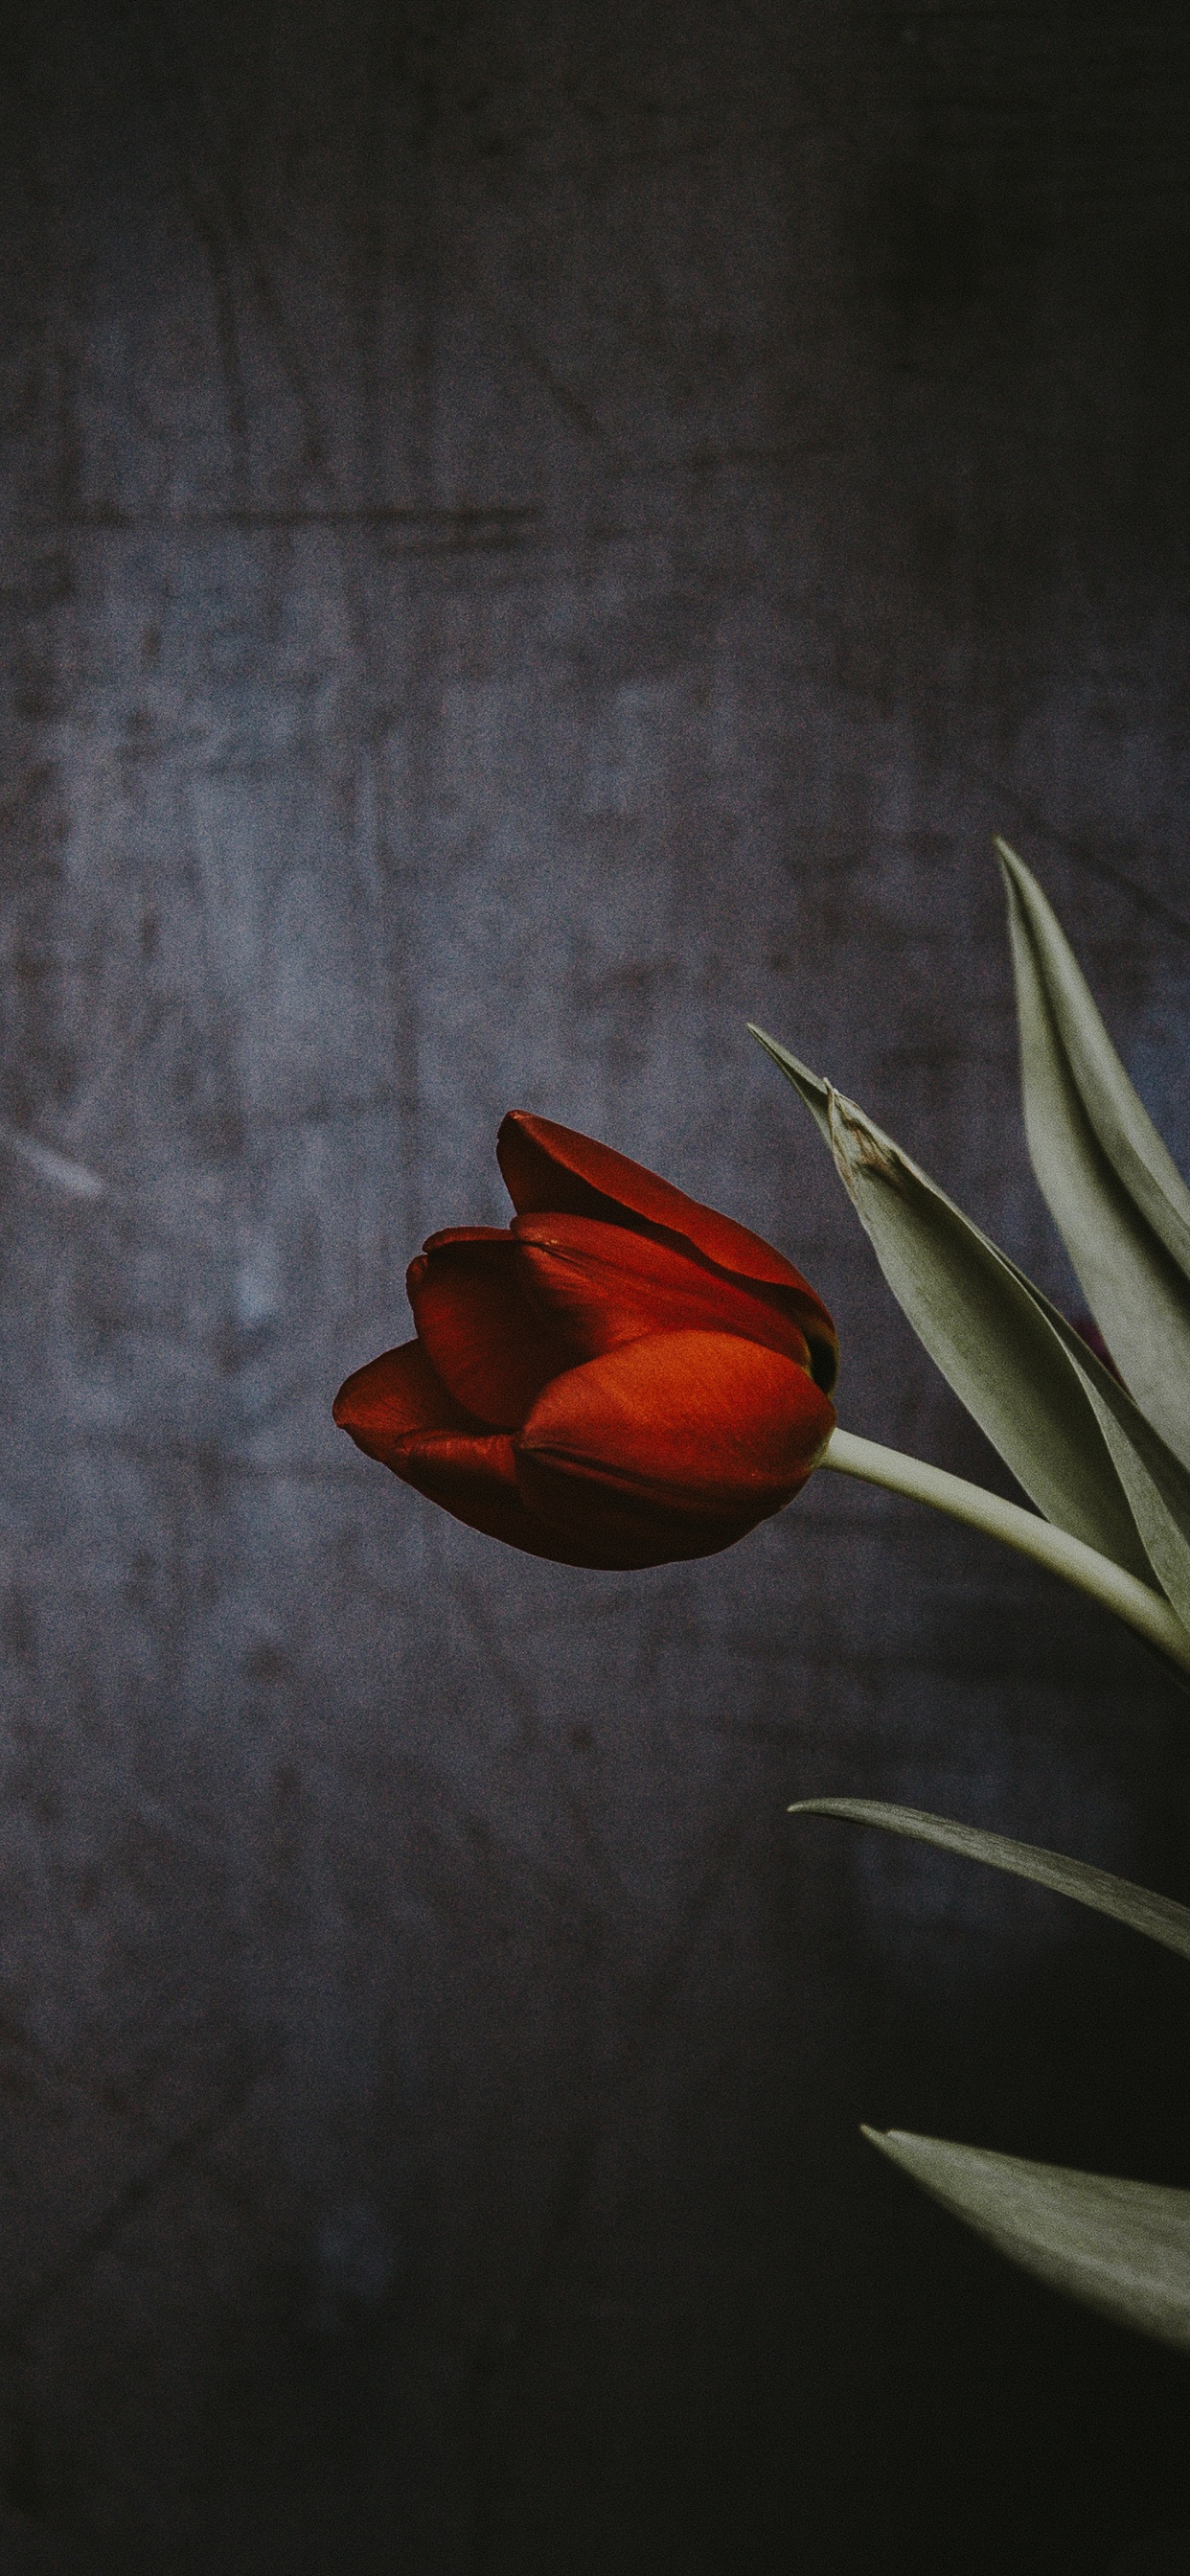 Ảnh nền hoa Tulip đẹp, hấp dẫn nhất